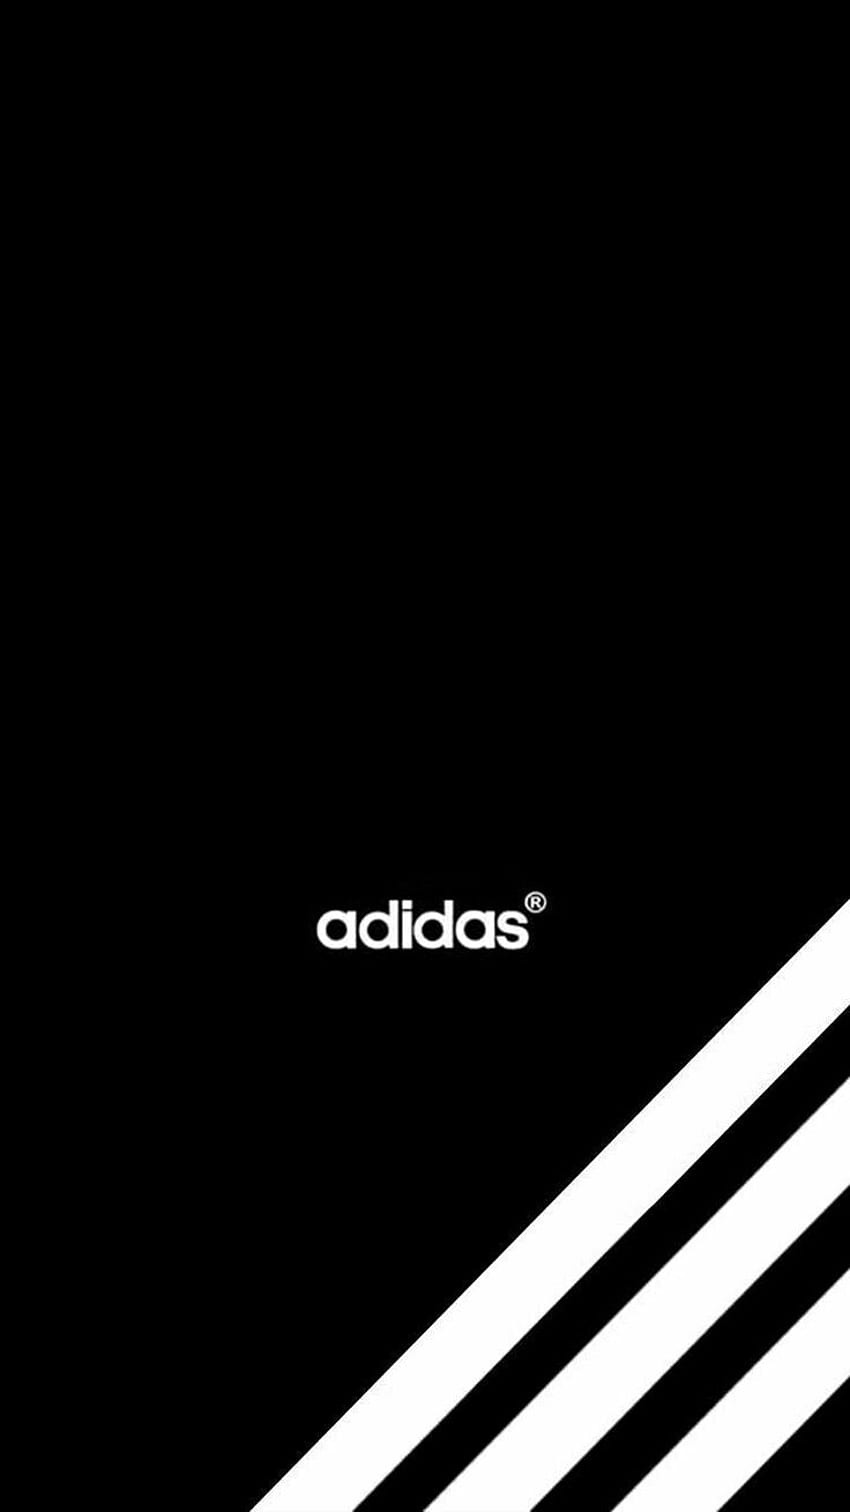 Jack sur 3 bandes. Adidas , Adidas iphone , fond Adidas, Adidas noir et blanc Fond d'écran de téléphone HD